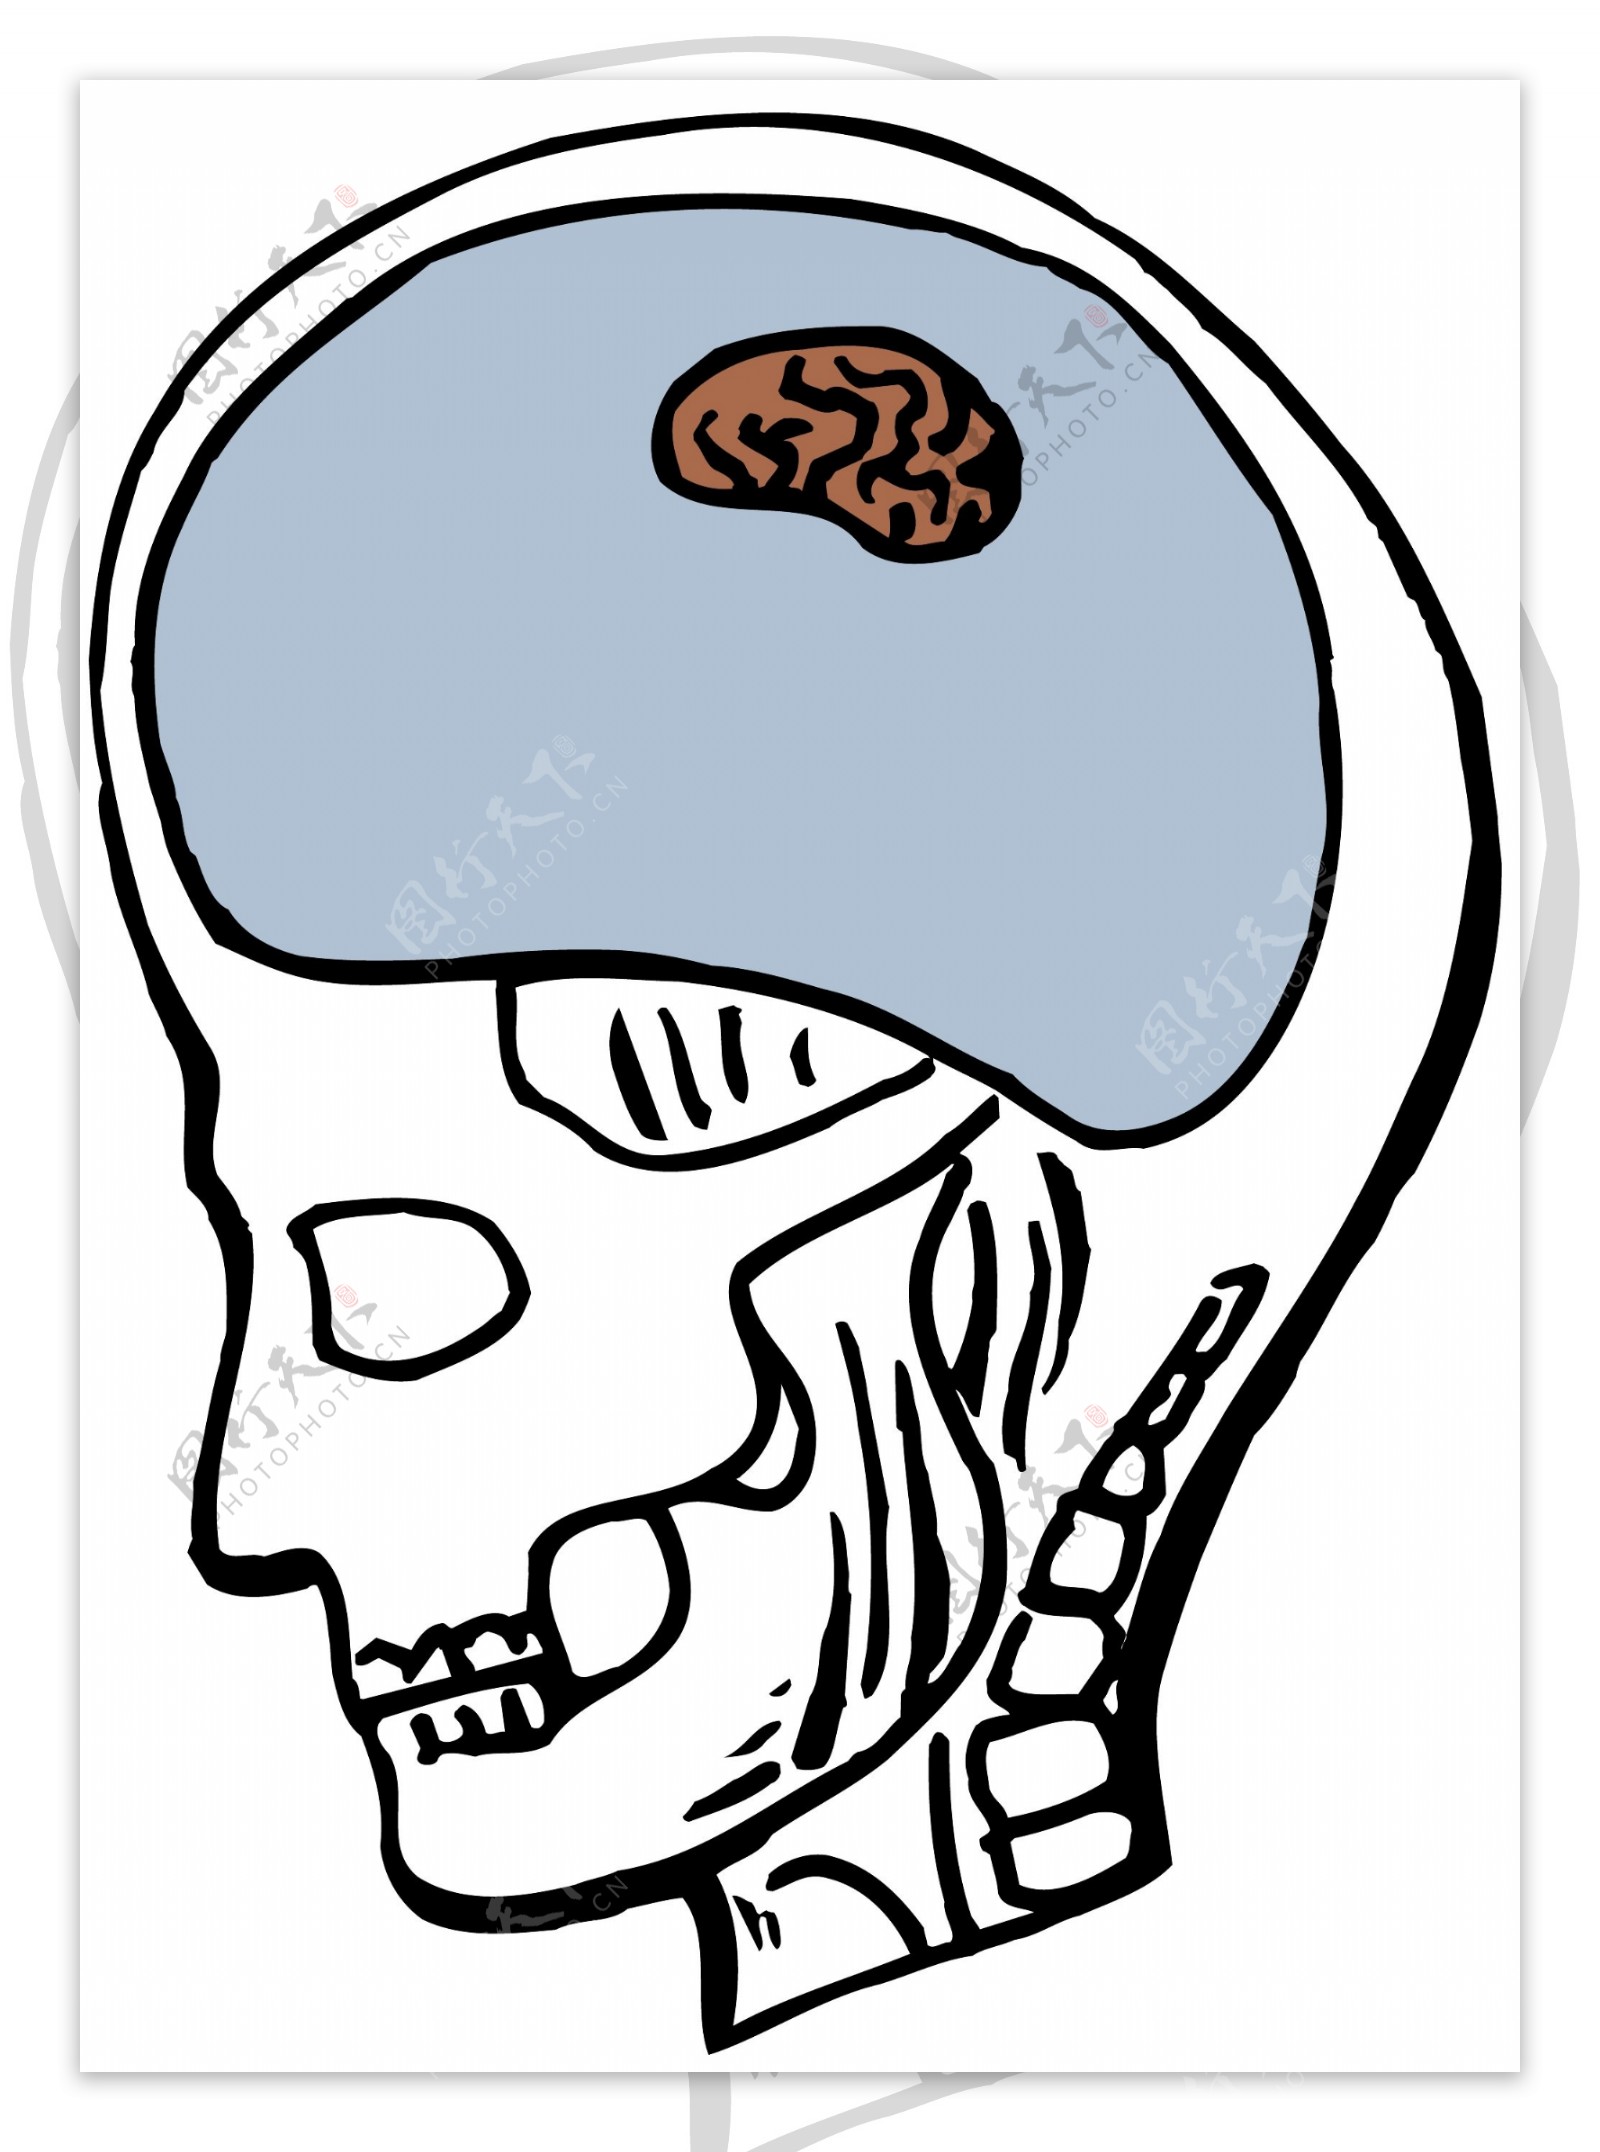 头颅大脑医用模型矢量素材EPS0044